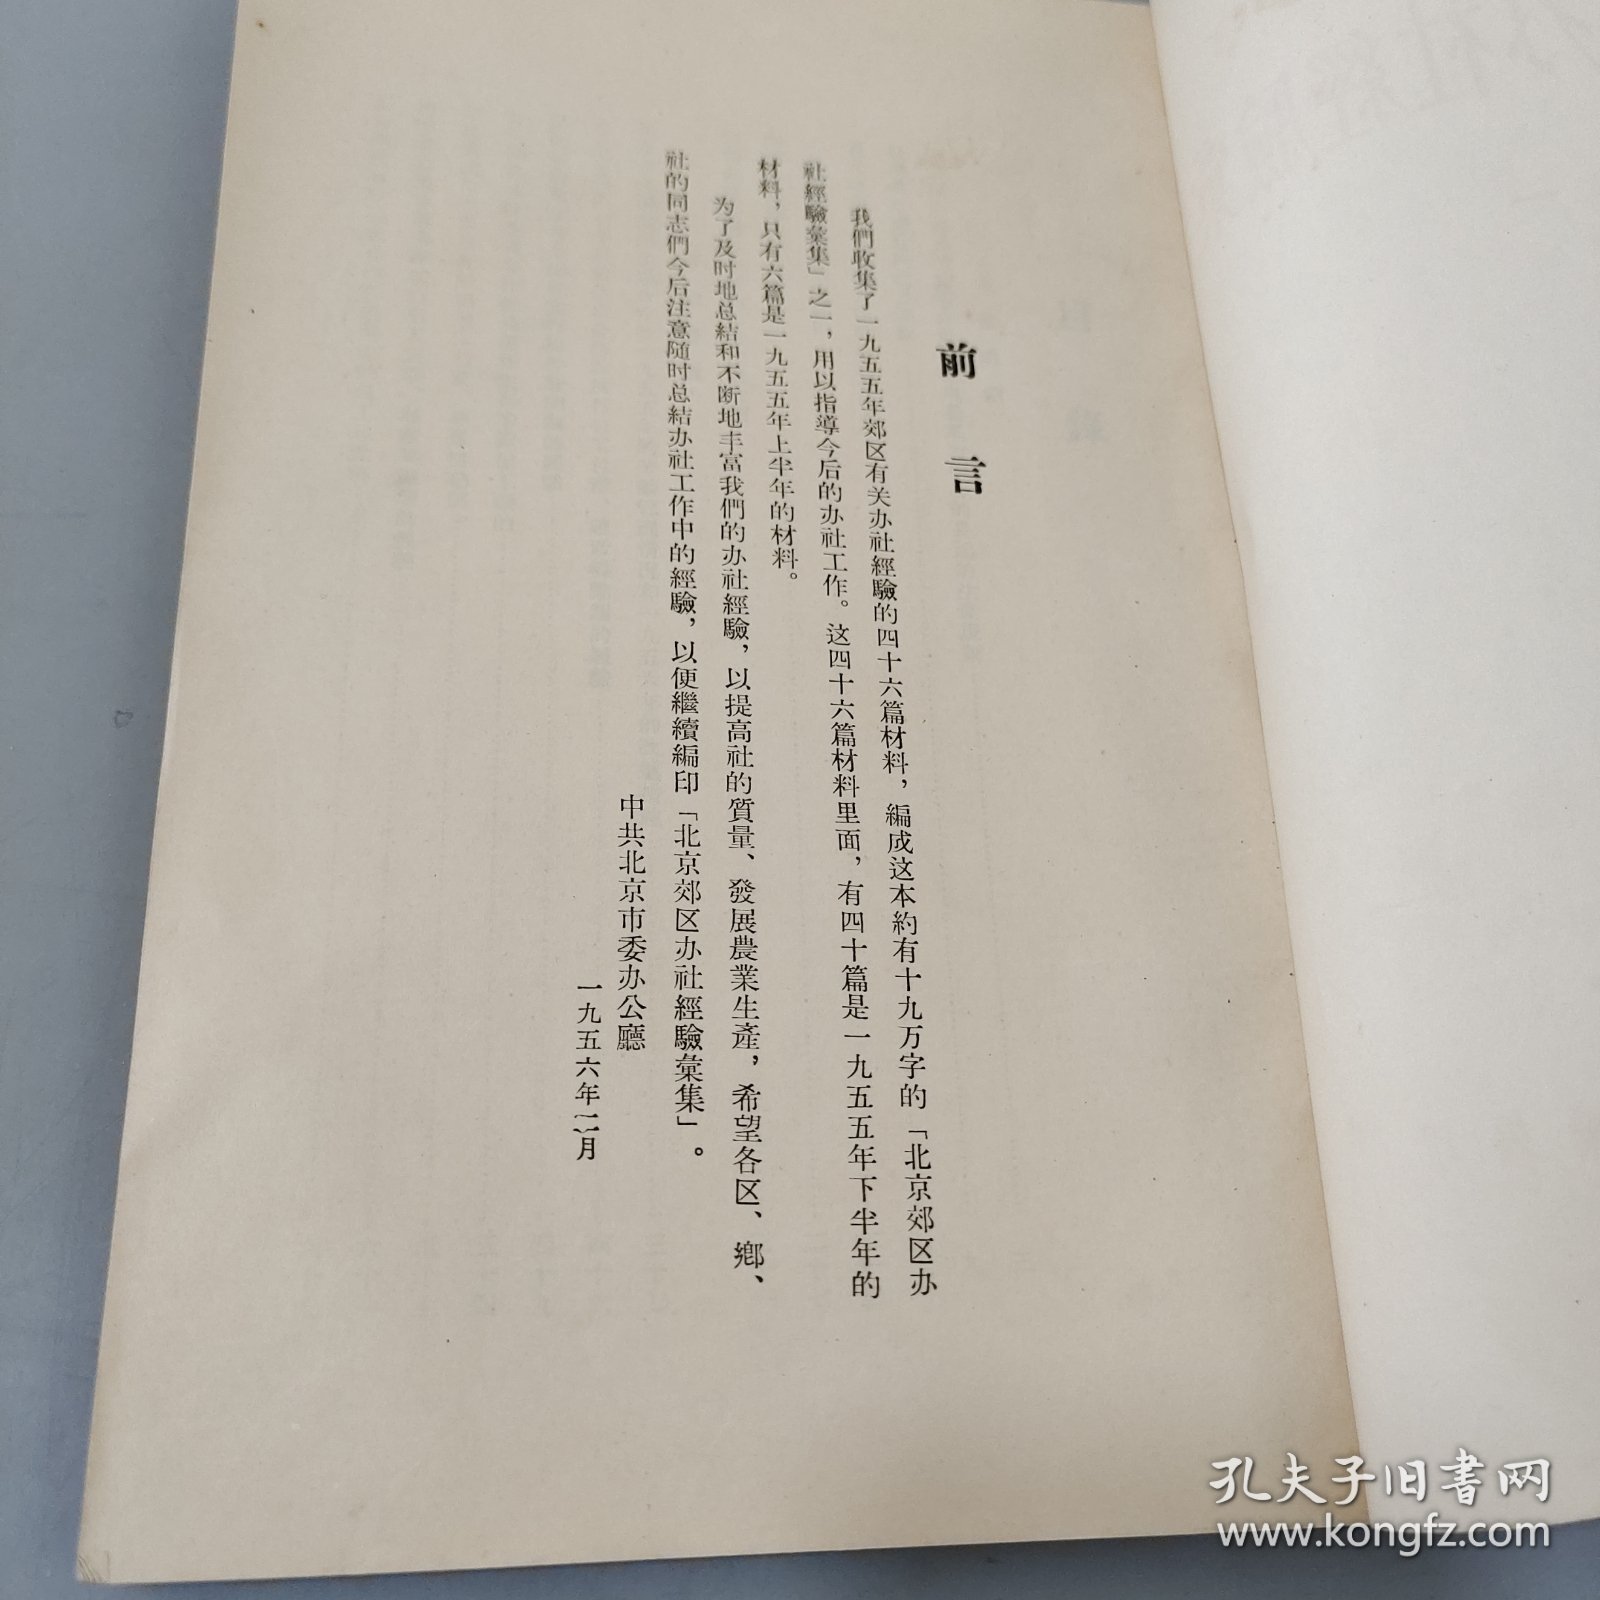 北京郊区办公社经验汇集1955.12